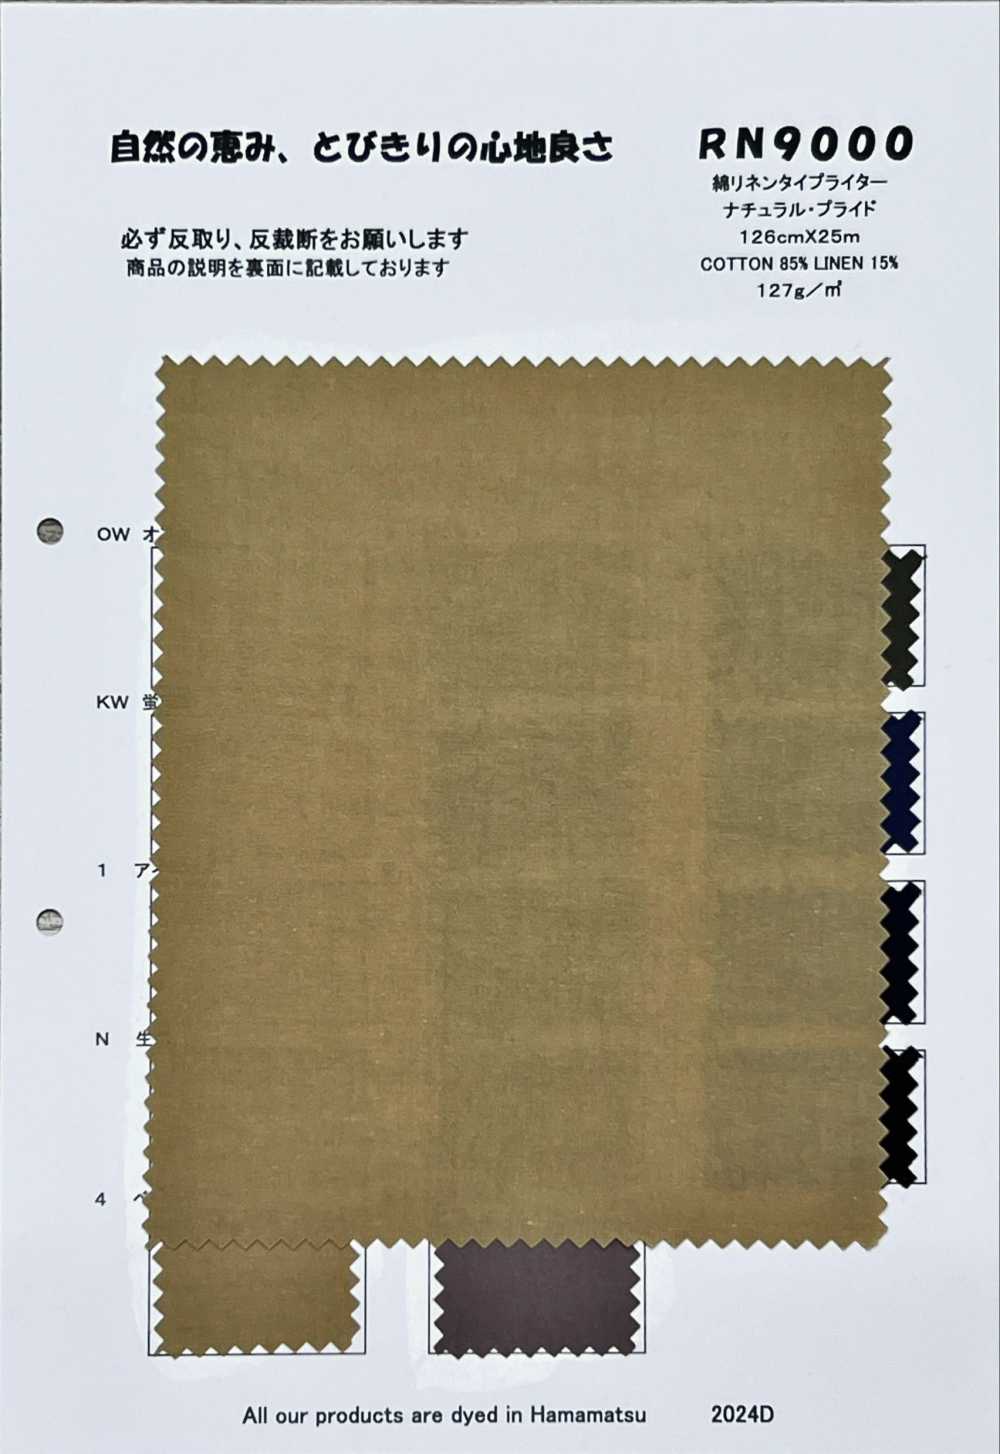 RN9000 Pano De Máquina De Escrever De Algodão E Linho Orgulho Natural[Têxtil / Tecido] KOYAMA